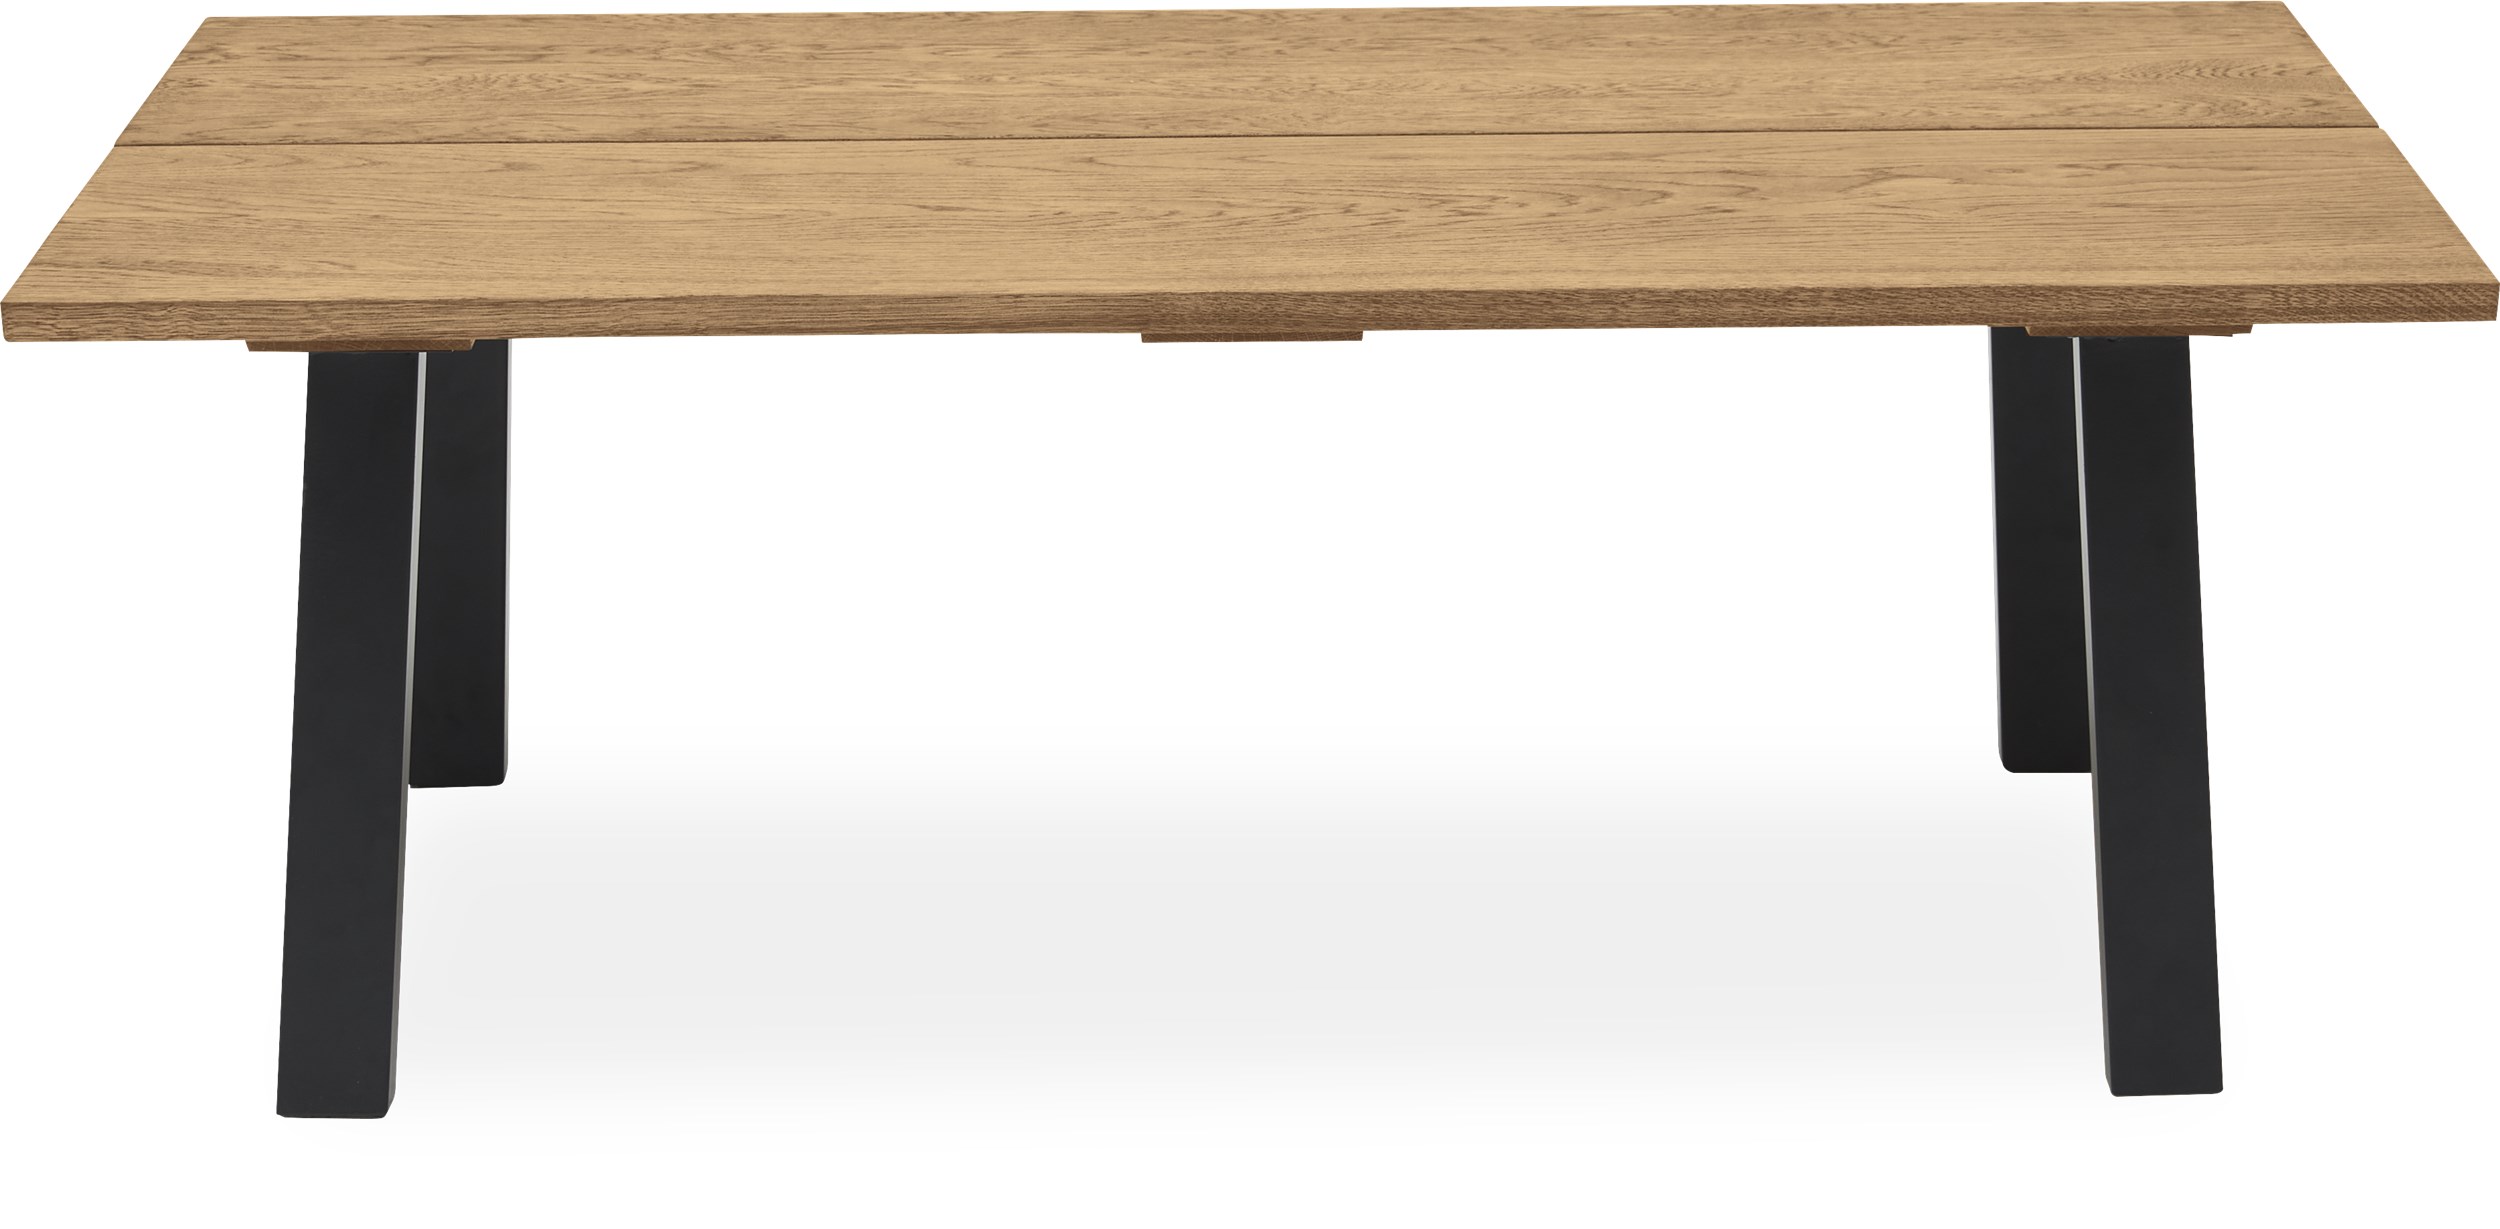 Real Soffbord 130 x 45 x 70 cm - Massiv naturoljad ek, 2 brädor med snedställd kant och ben i svart, pulverlackerad metall